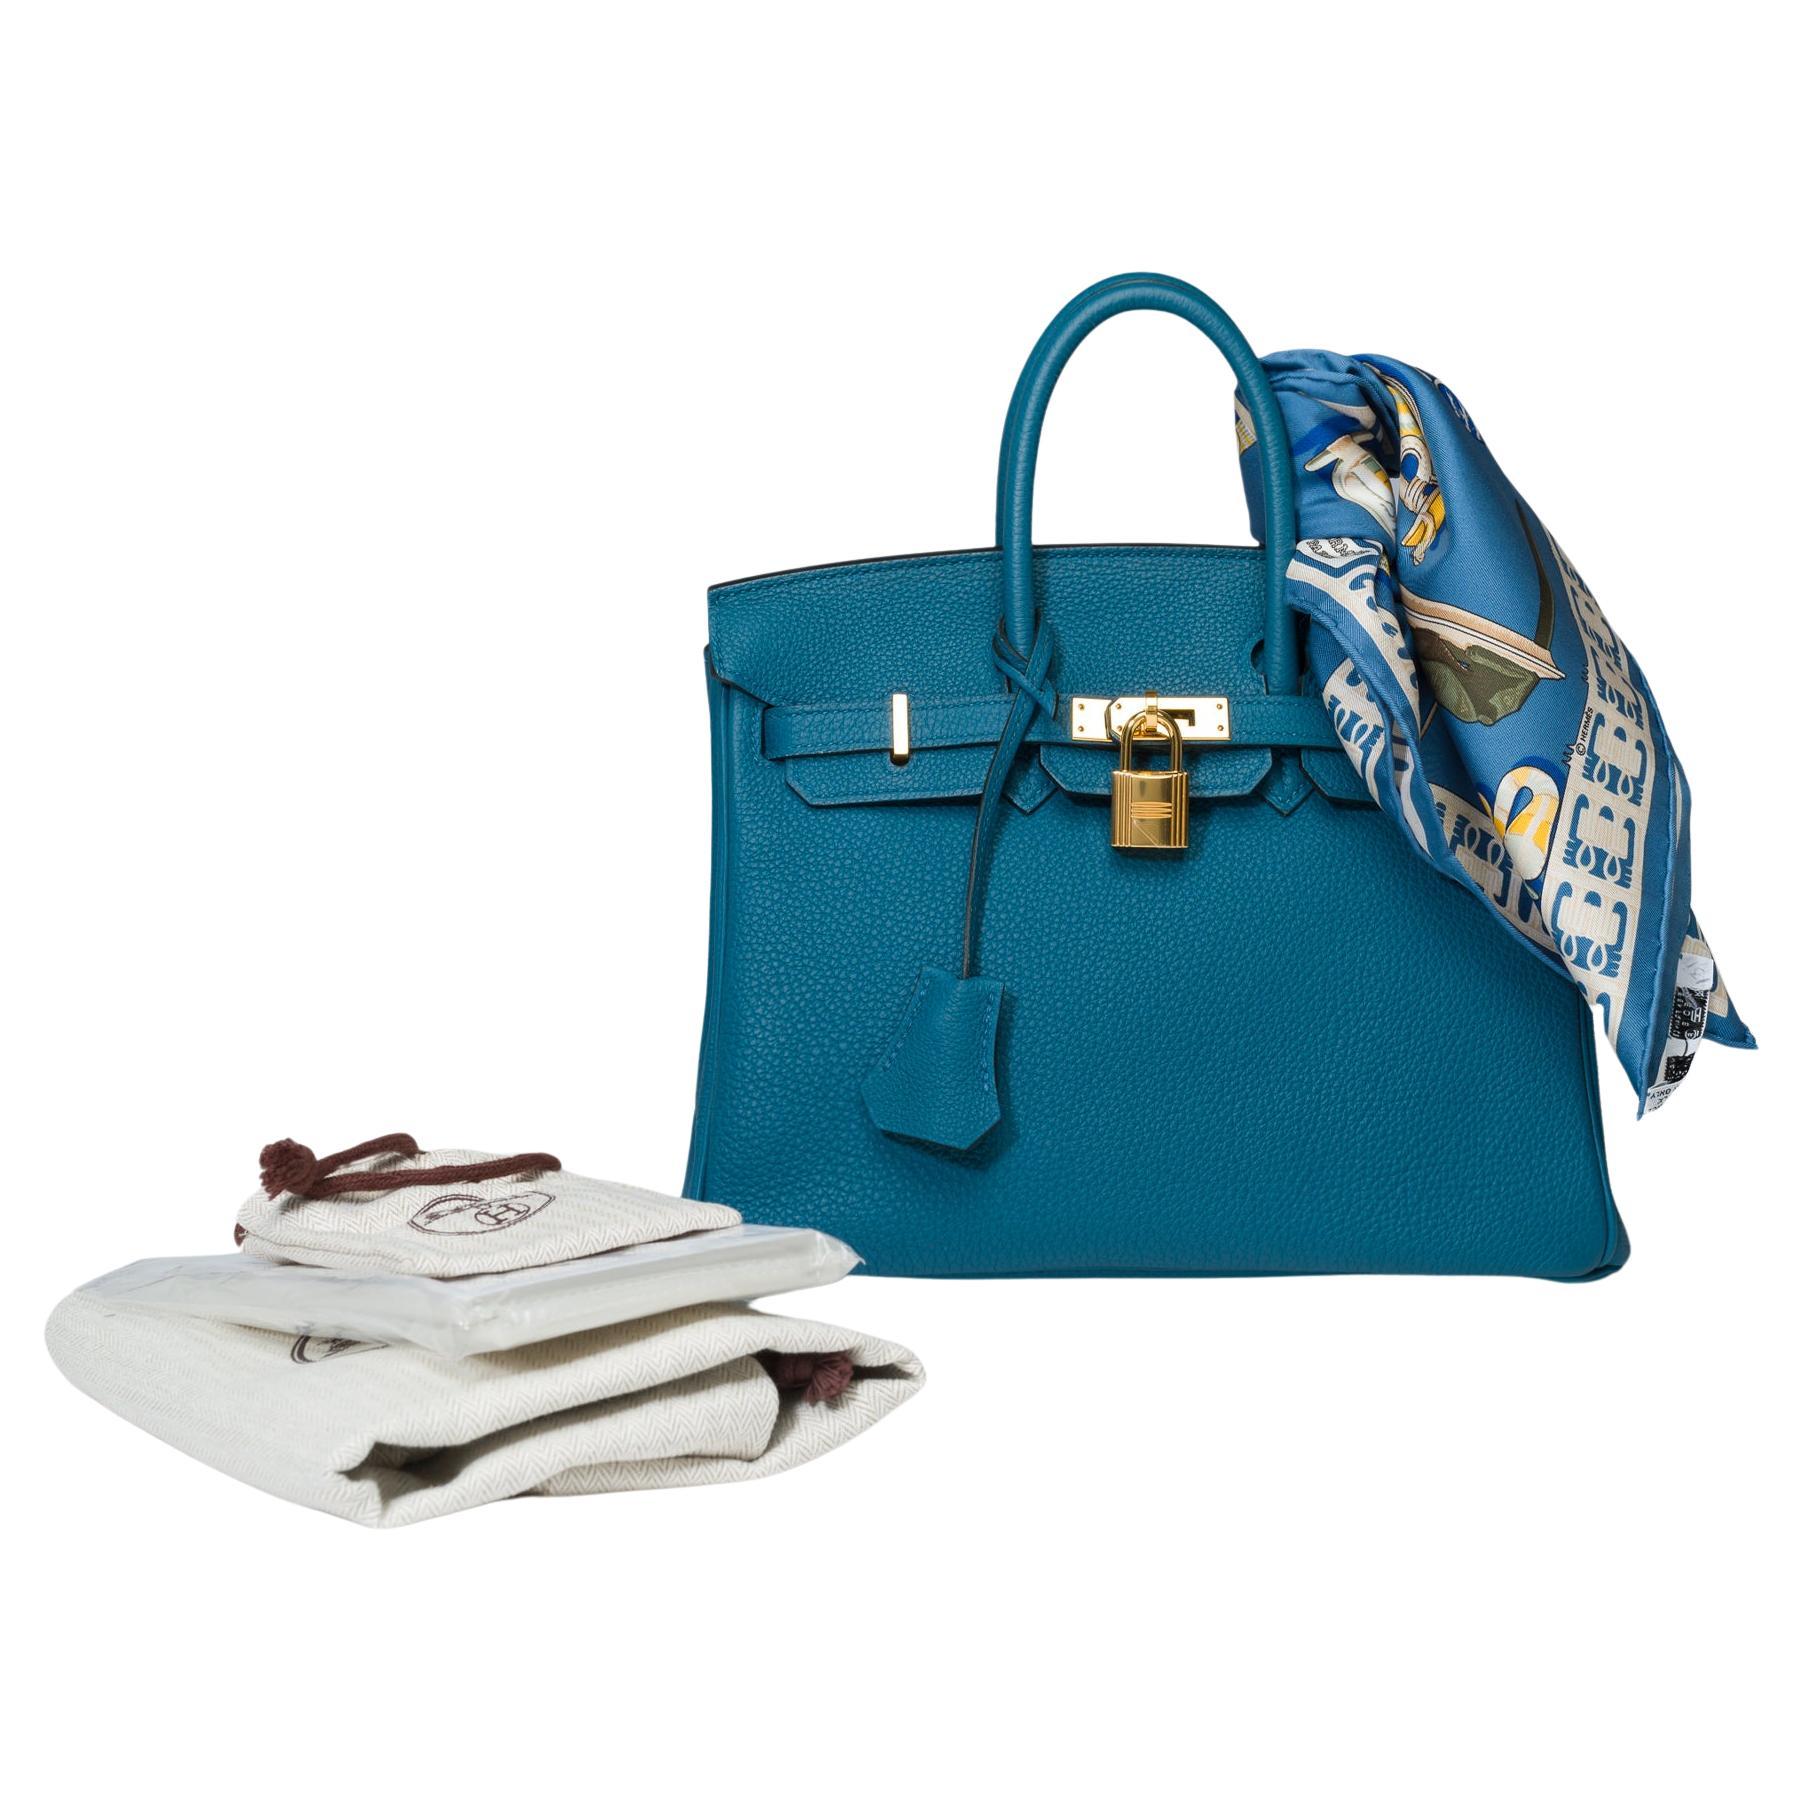 Amazing Hermes Birkin 25cm handbag in Togo Blue Cobalt leather, GHW For Sale